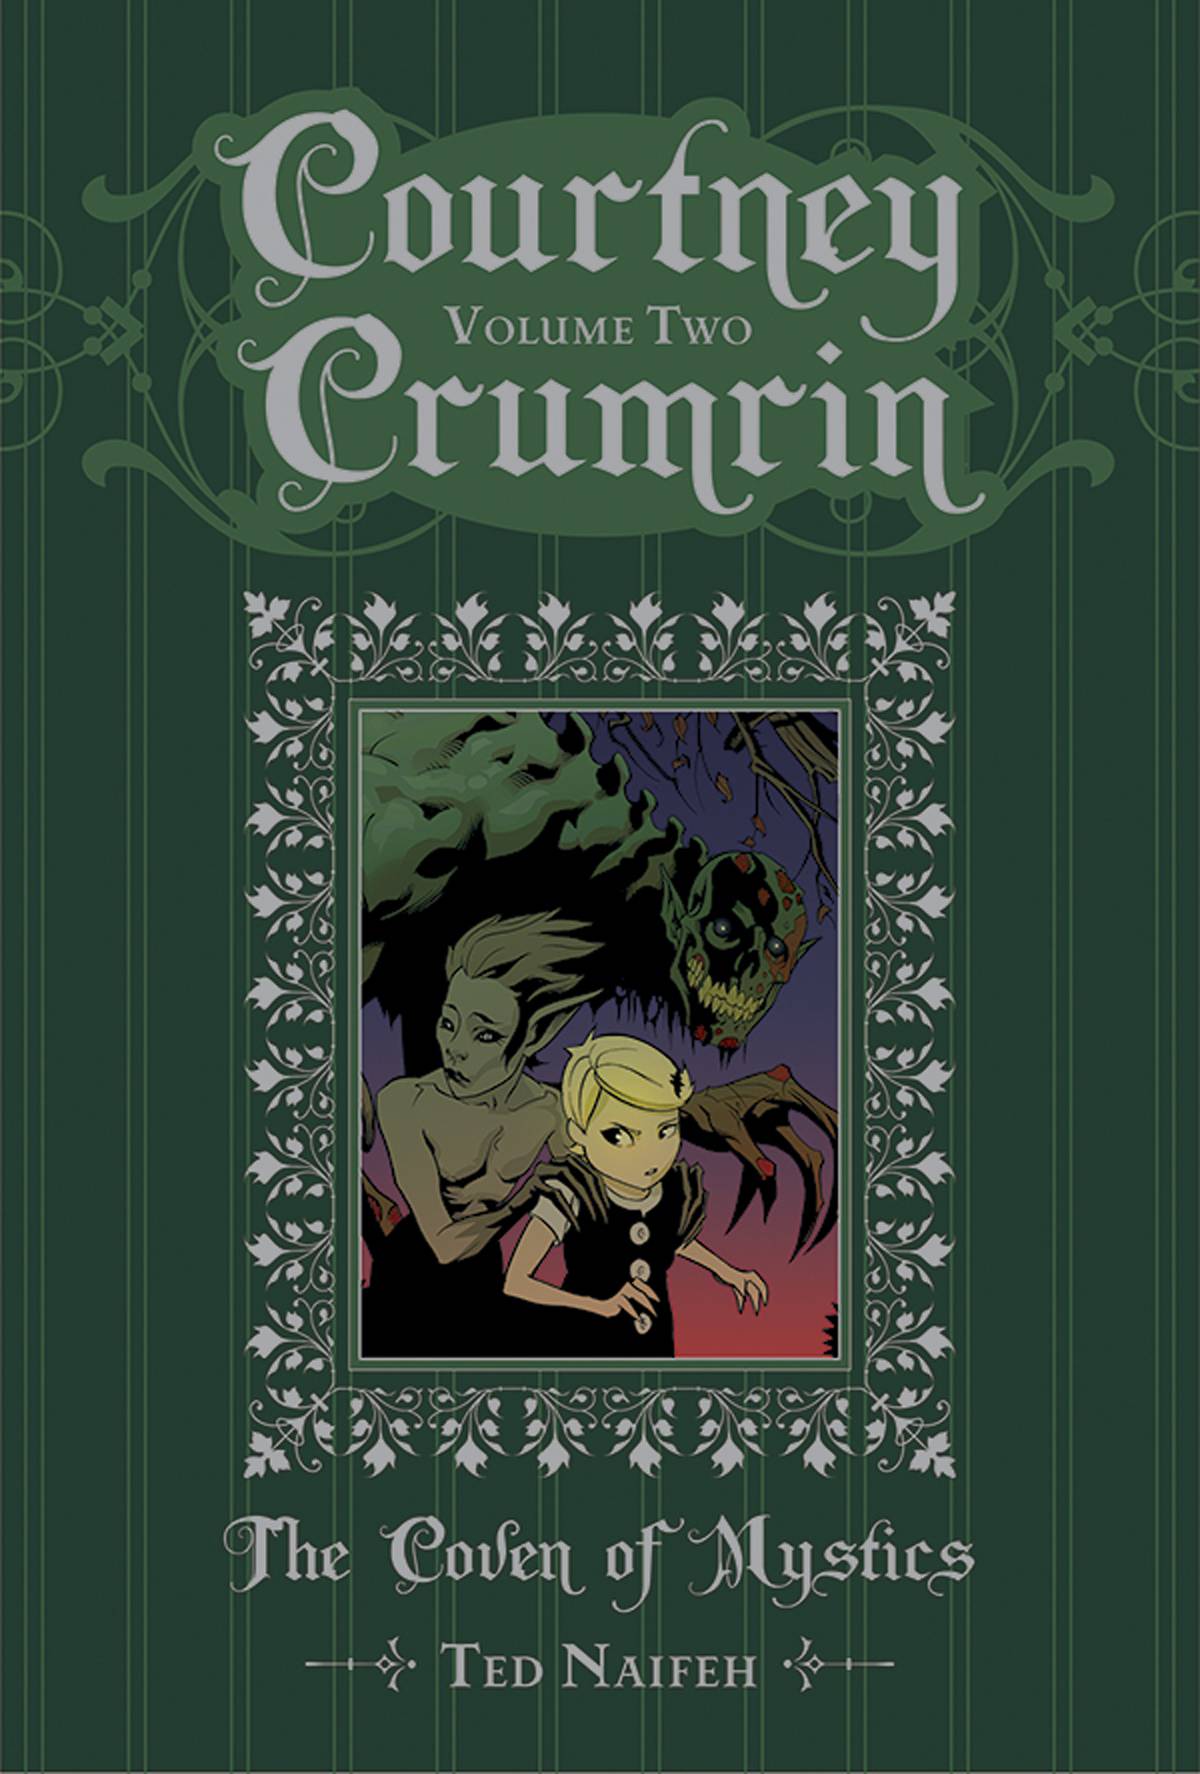 courtney crumrin volume 1